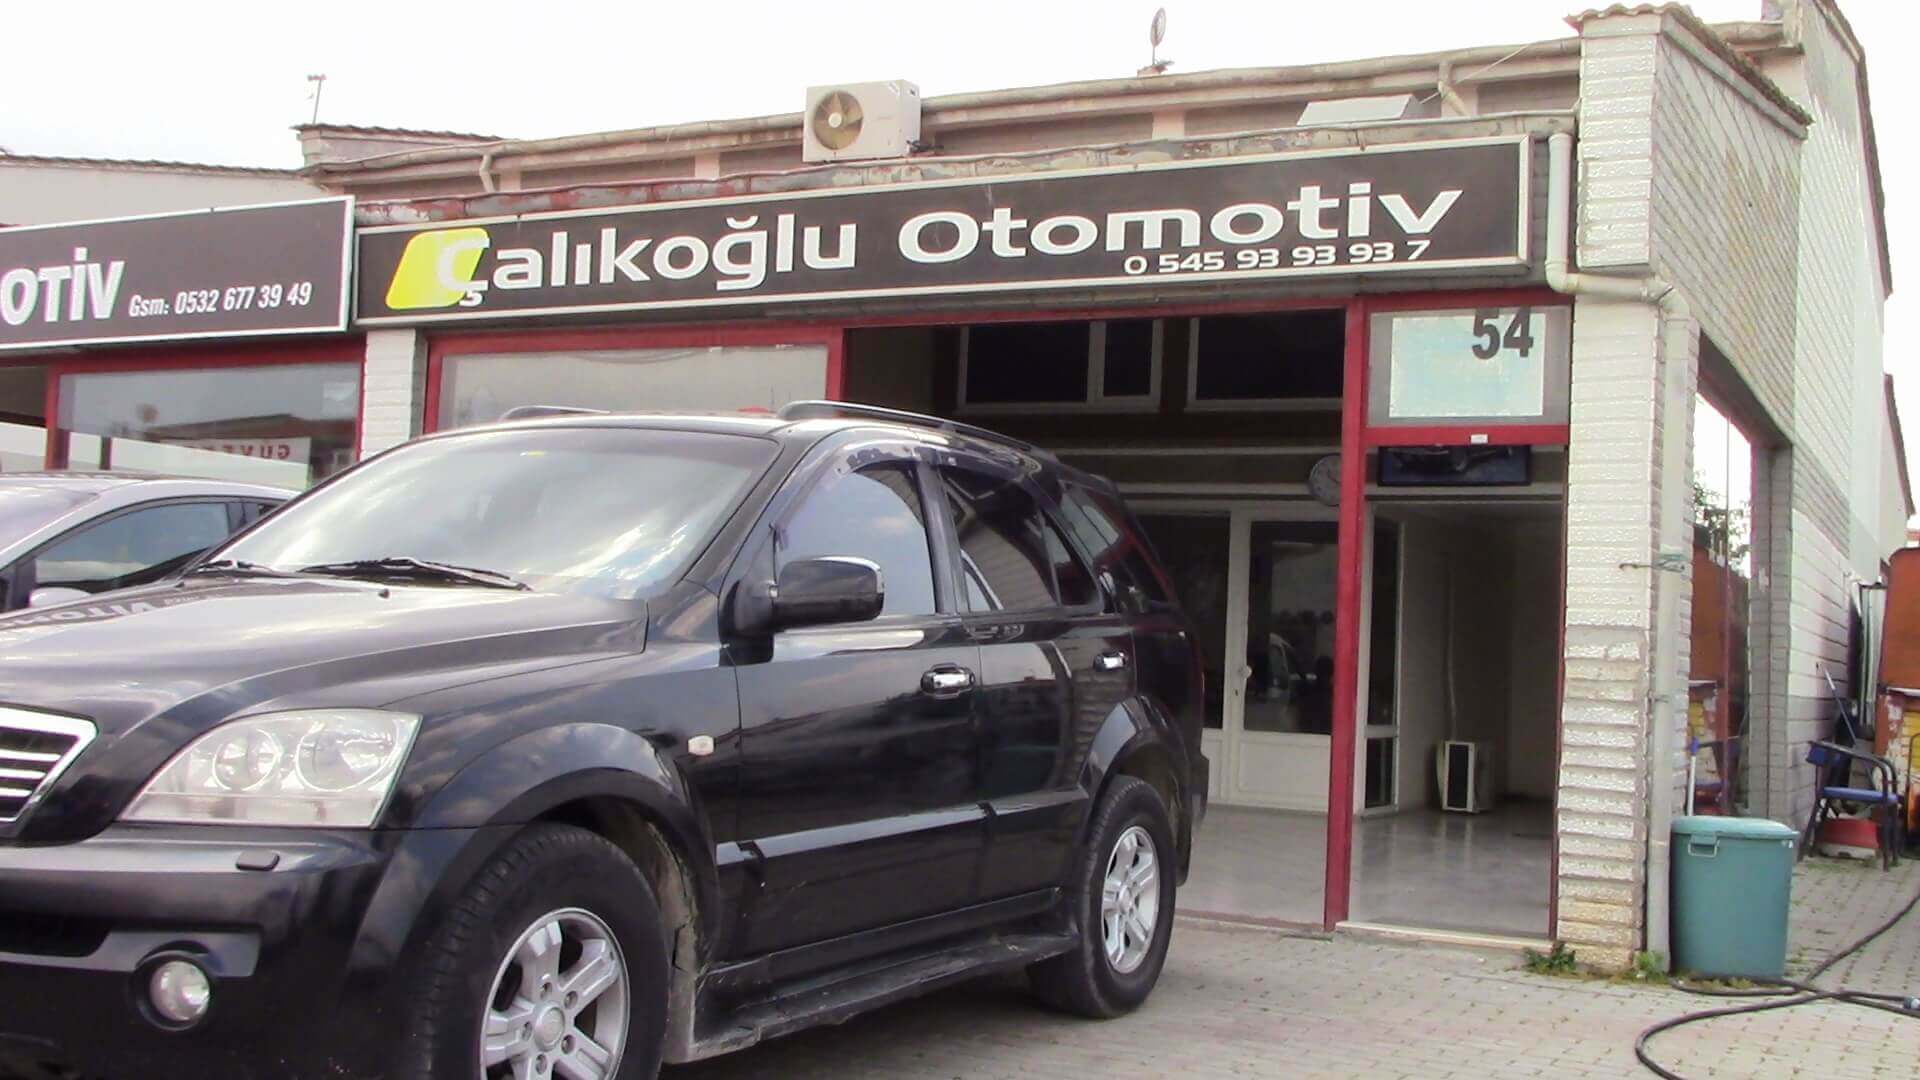 Eskişehir Çalıkoğlu Otomotiv - Eskişehir Oto Galeri | Eskişehir Oto